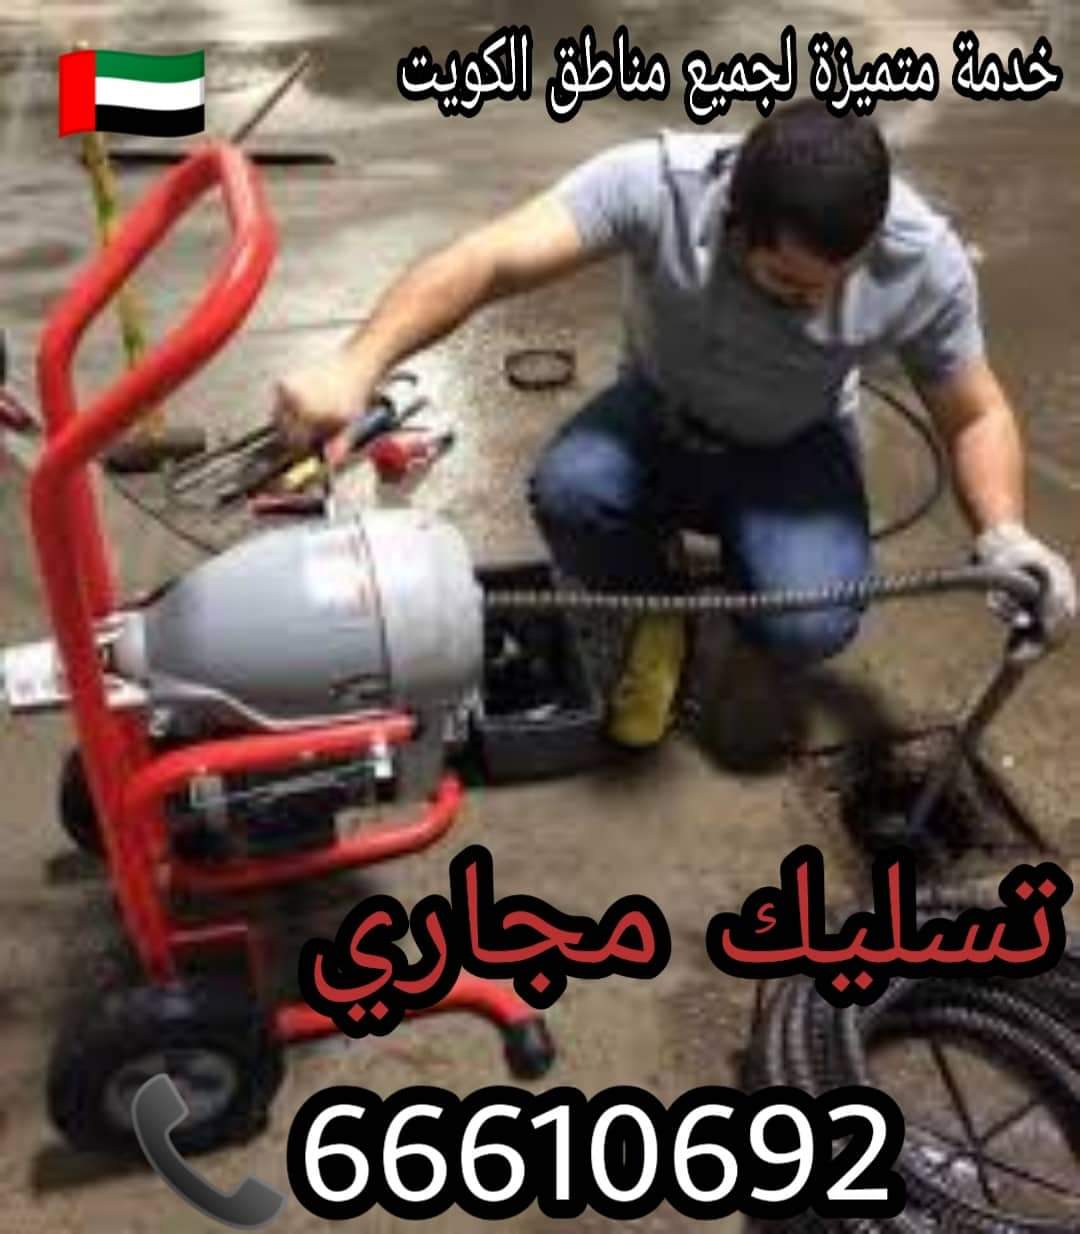 تسليك مجاري القادسية / 66610692 / صيانة وتركيب ادوات صحية الكويت